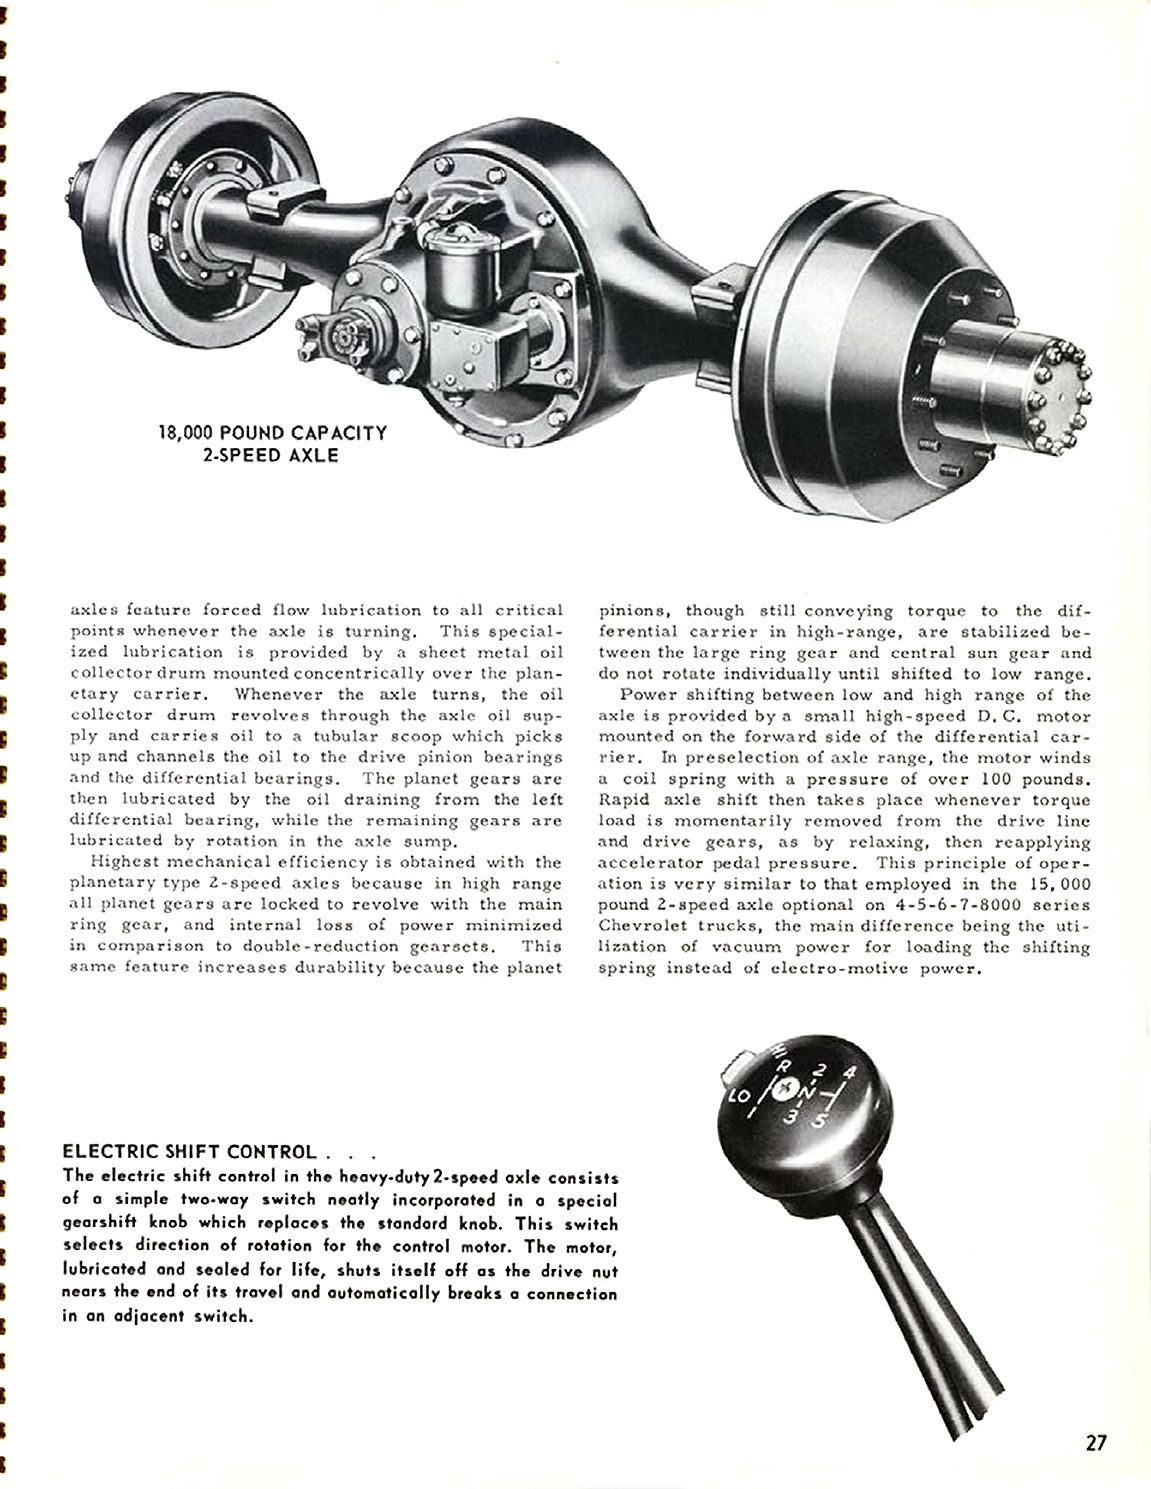 1956_Chevrolet_Truck_Engineering_Features-27